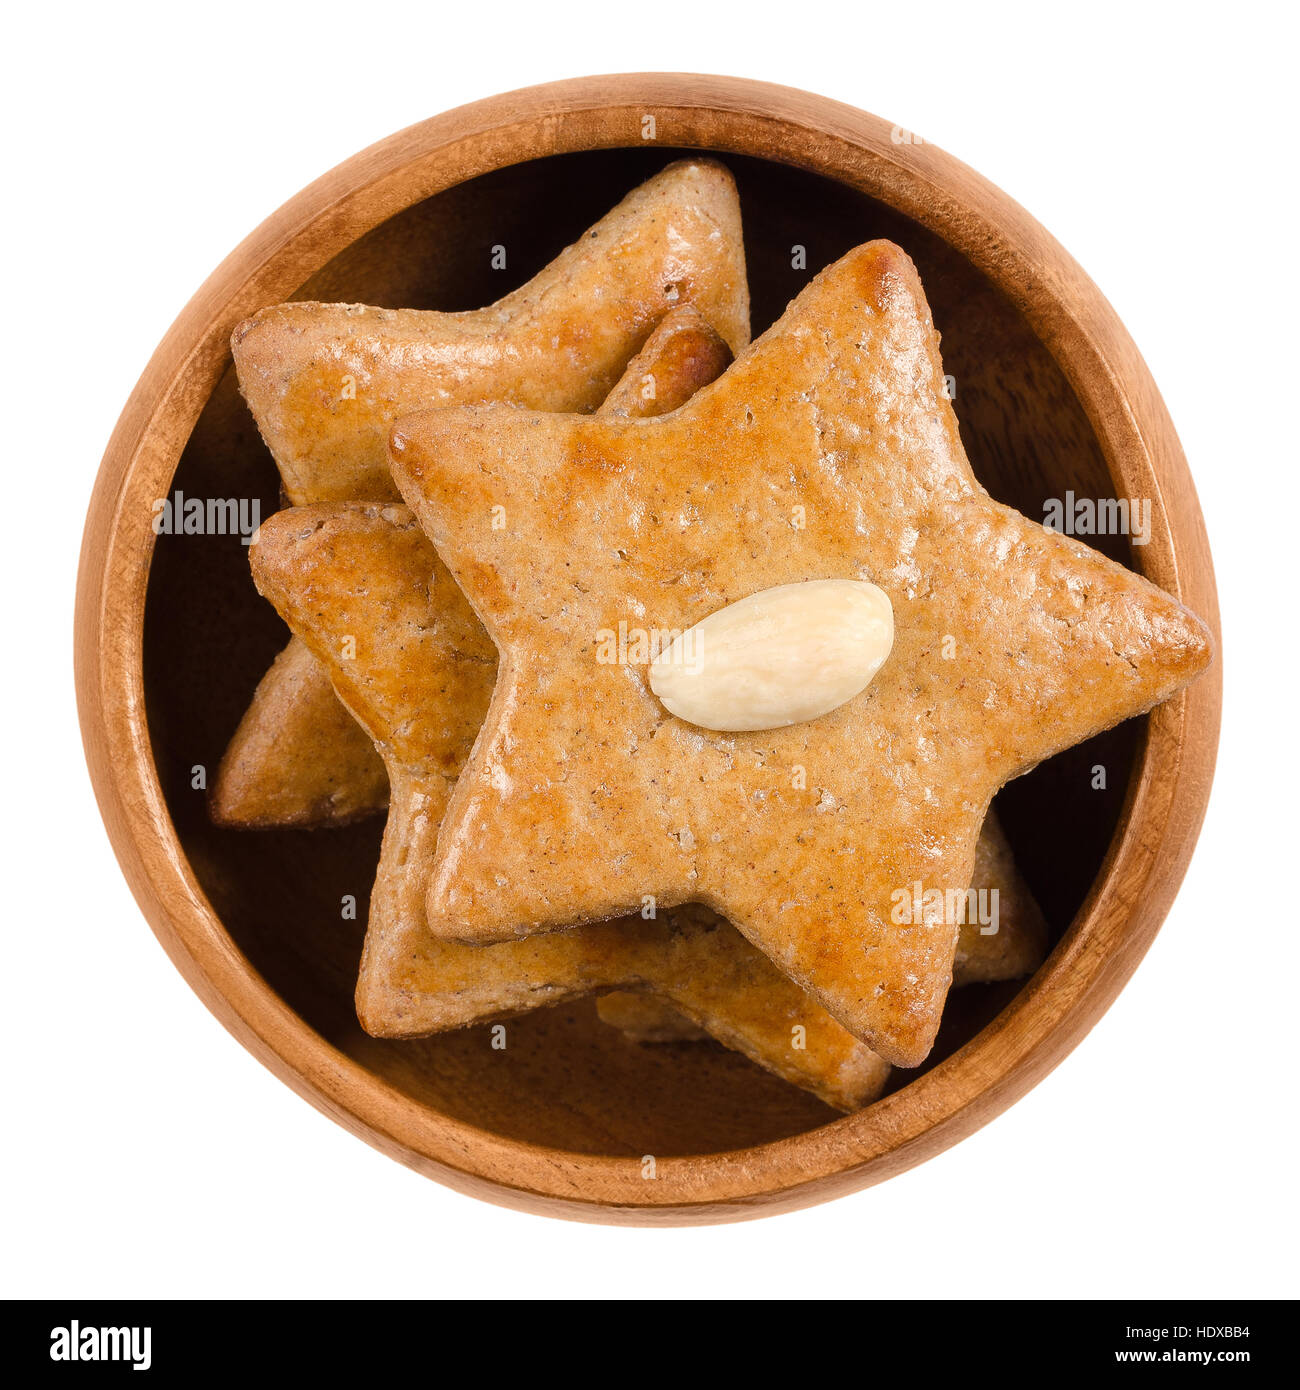 Gingerbread stelle nella ciotola di legno. Dolce beni cotti al forno. Brown, piatta e a forma di stella con una mandorla a metà sulla parte superiore. Foto Stock